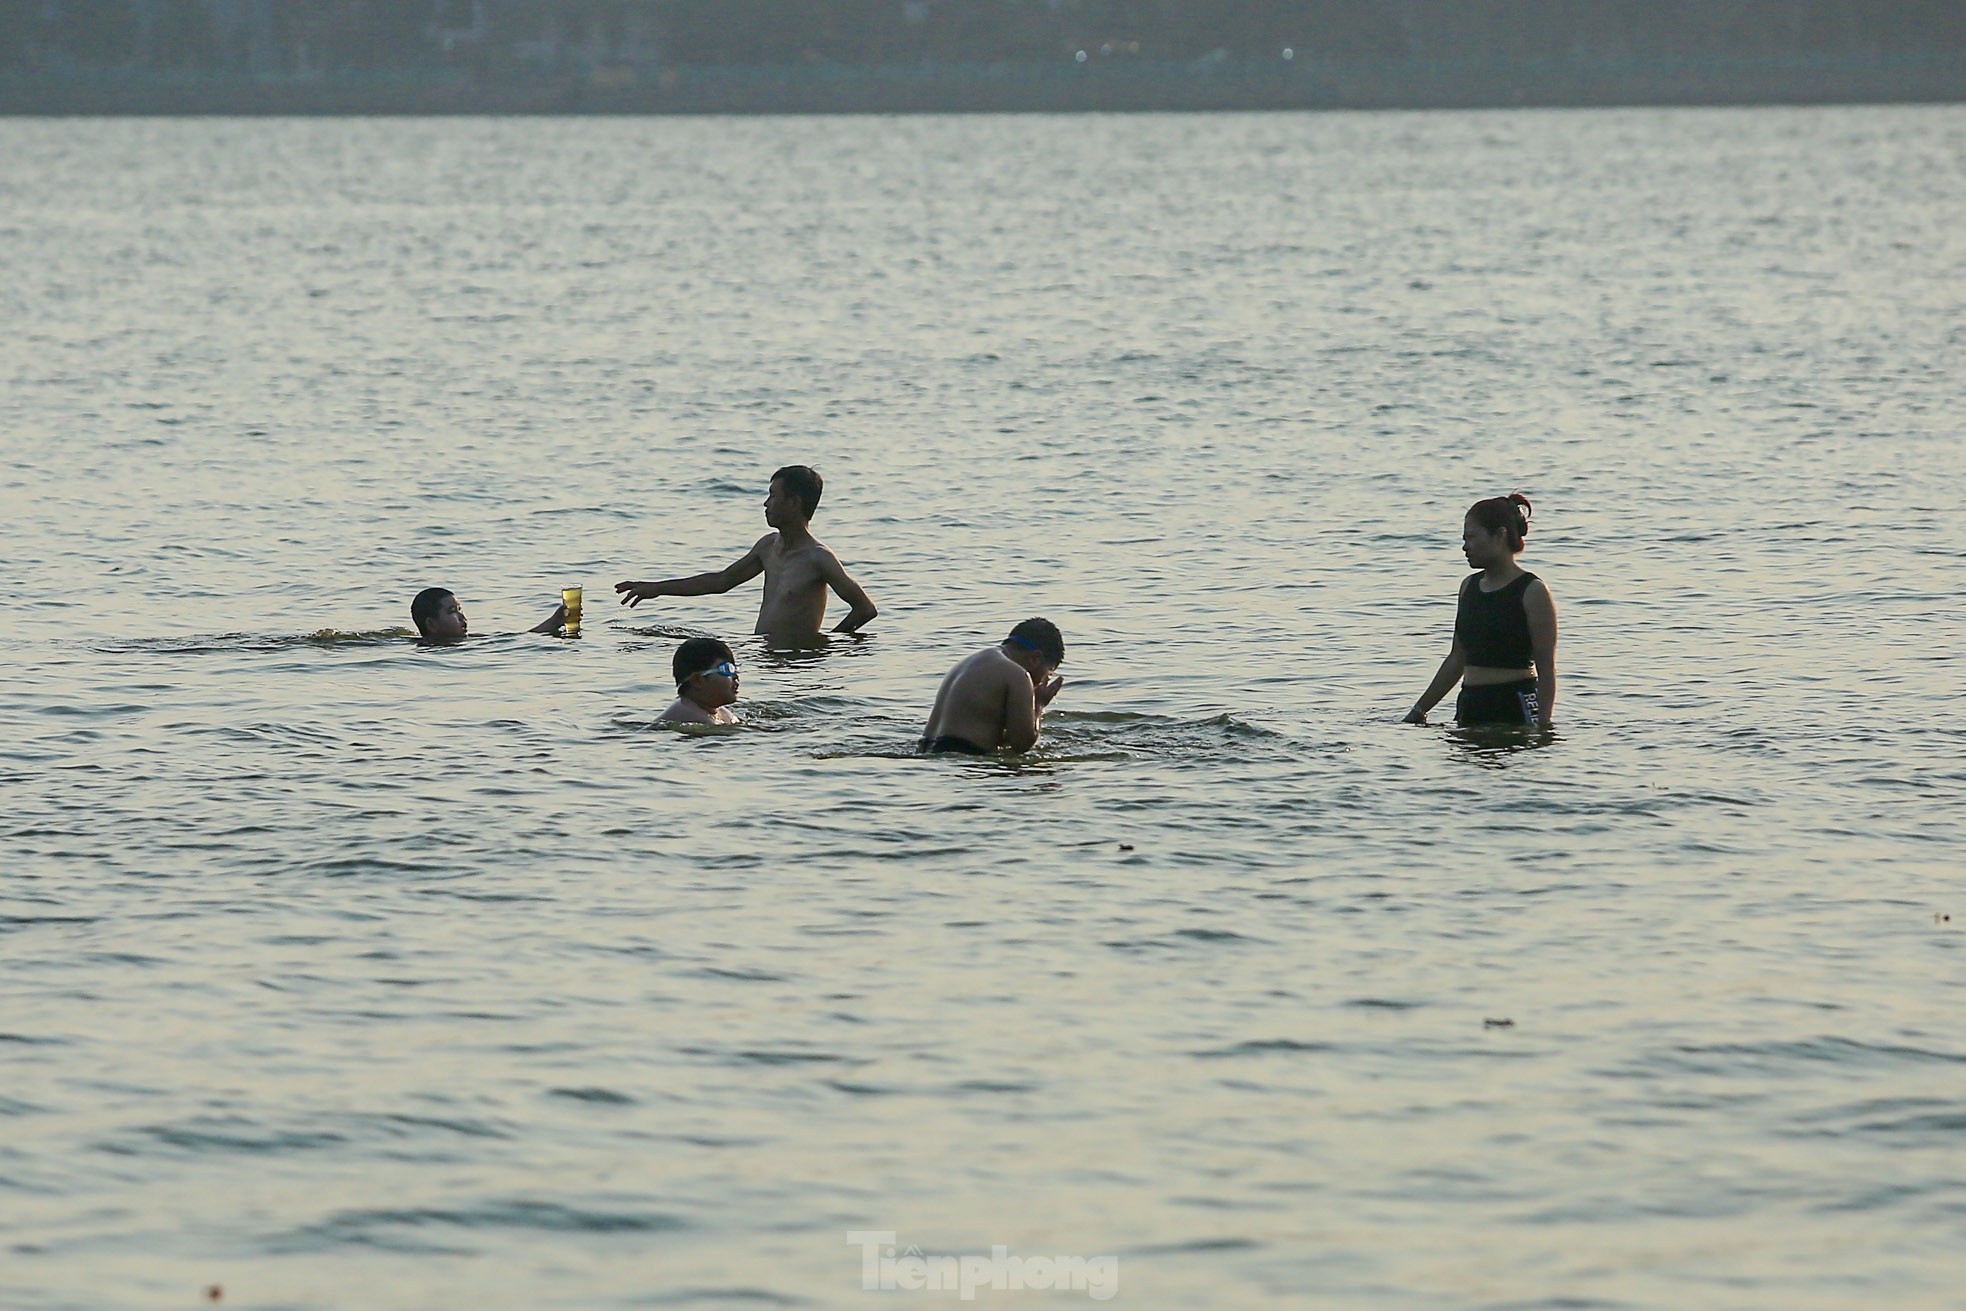 Nắng nóng oi bức, người Hà Nội 'biến' hồ Tây thành bể bơi giải nhiệt bất chấp lệnh cấm - Ảnh 4.